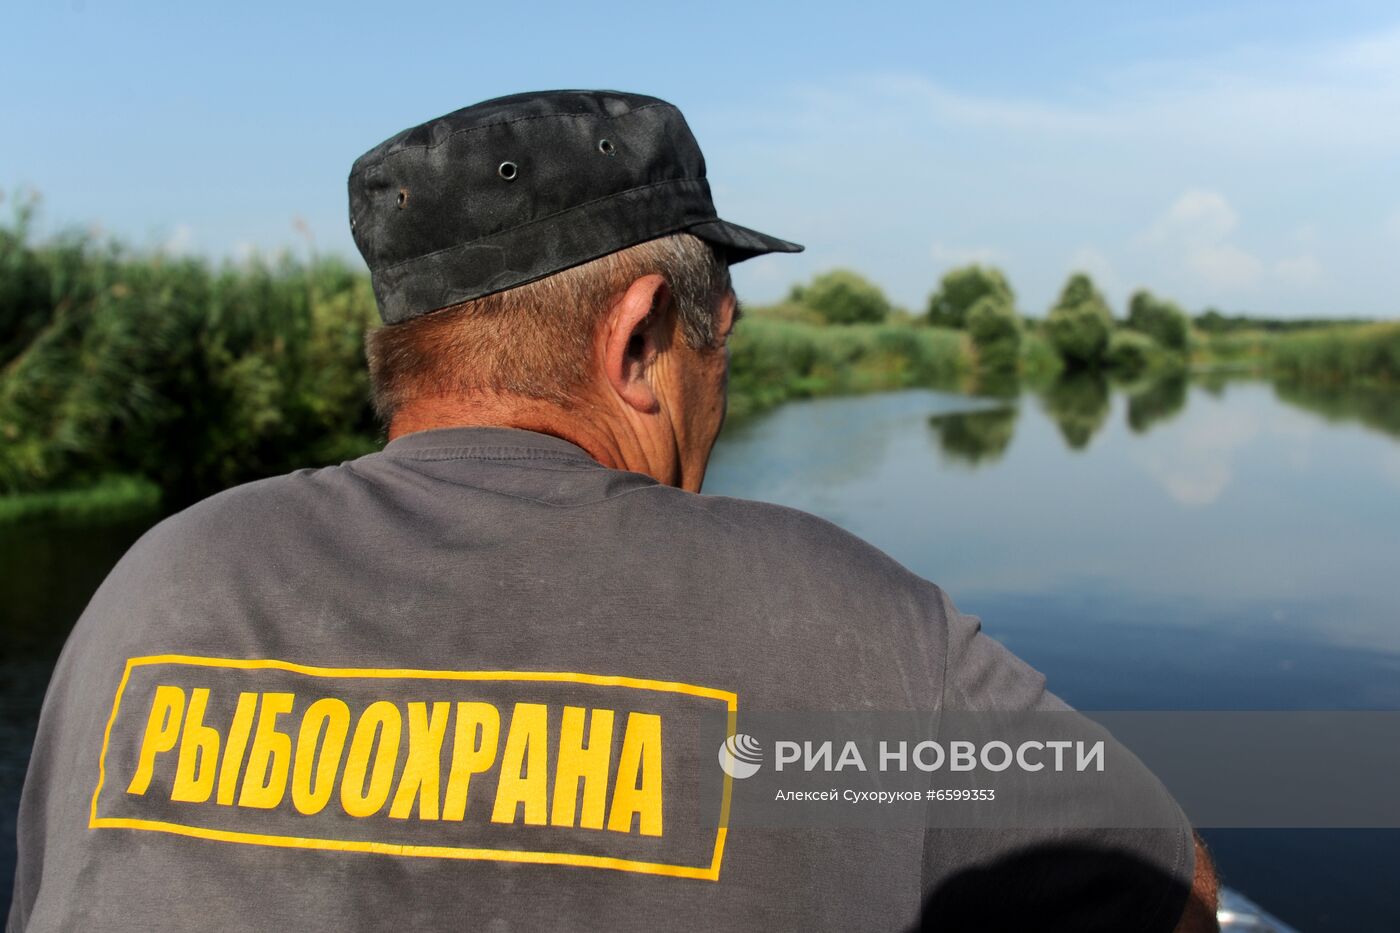 Работа сотрудников Федерального агентства по рыболовству в Тамбовской области